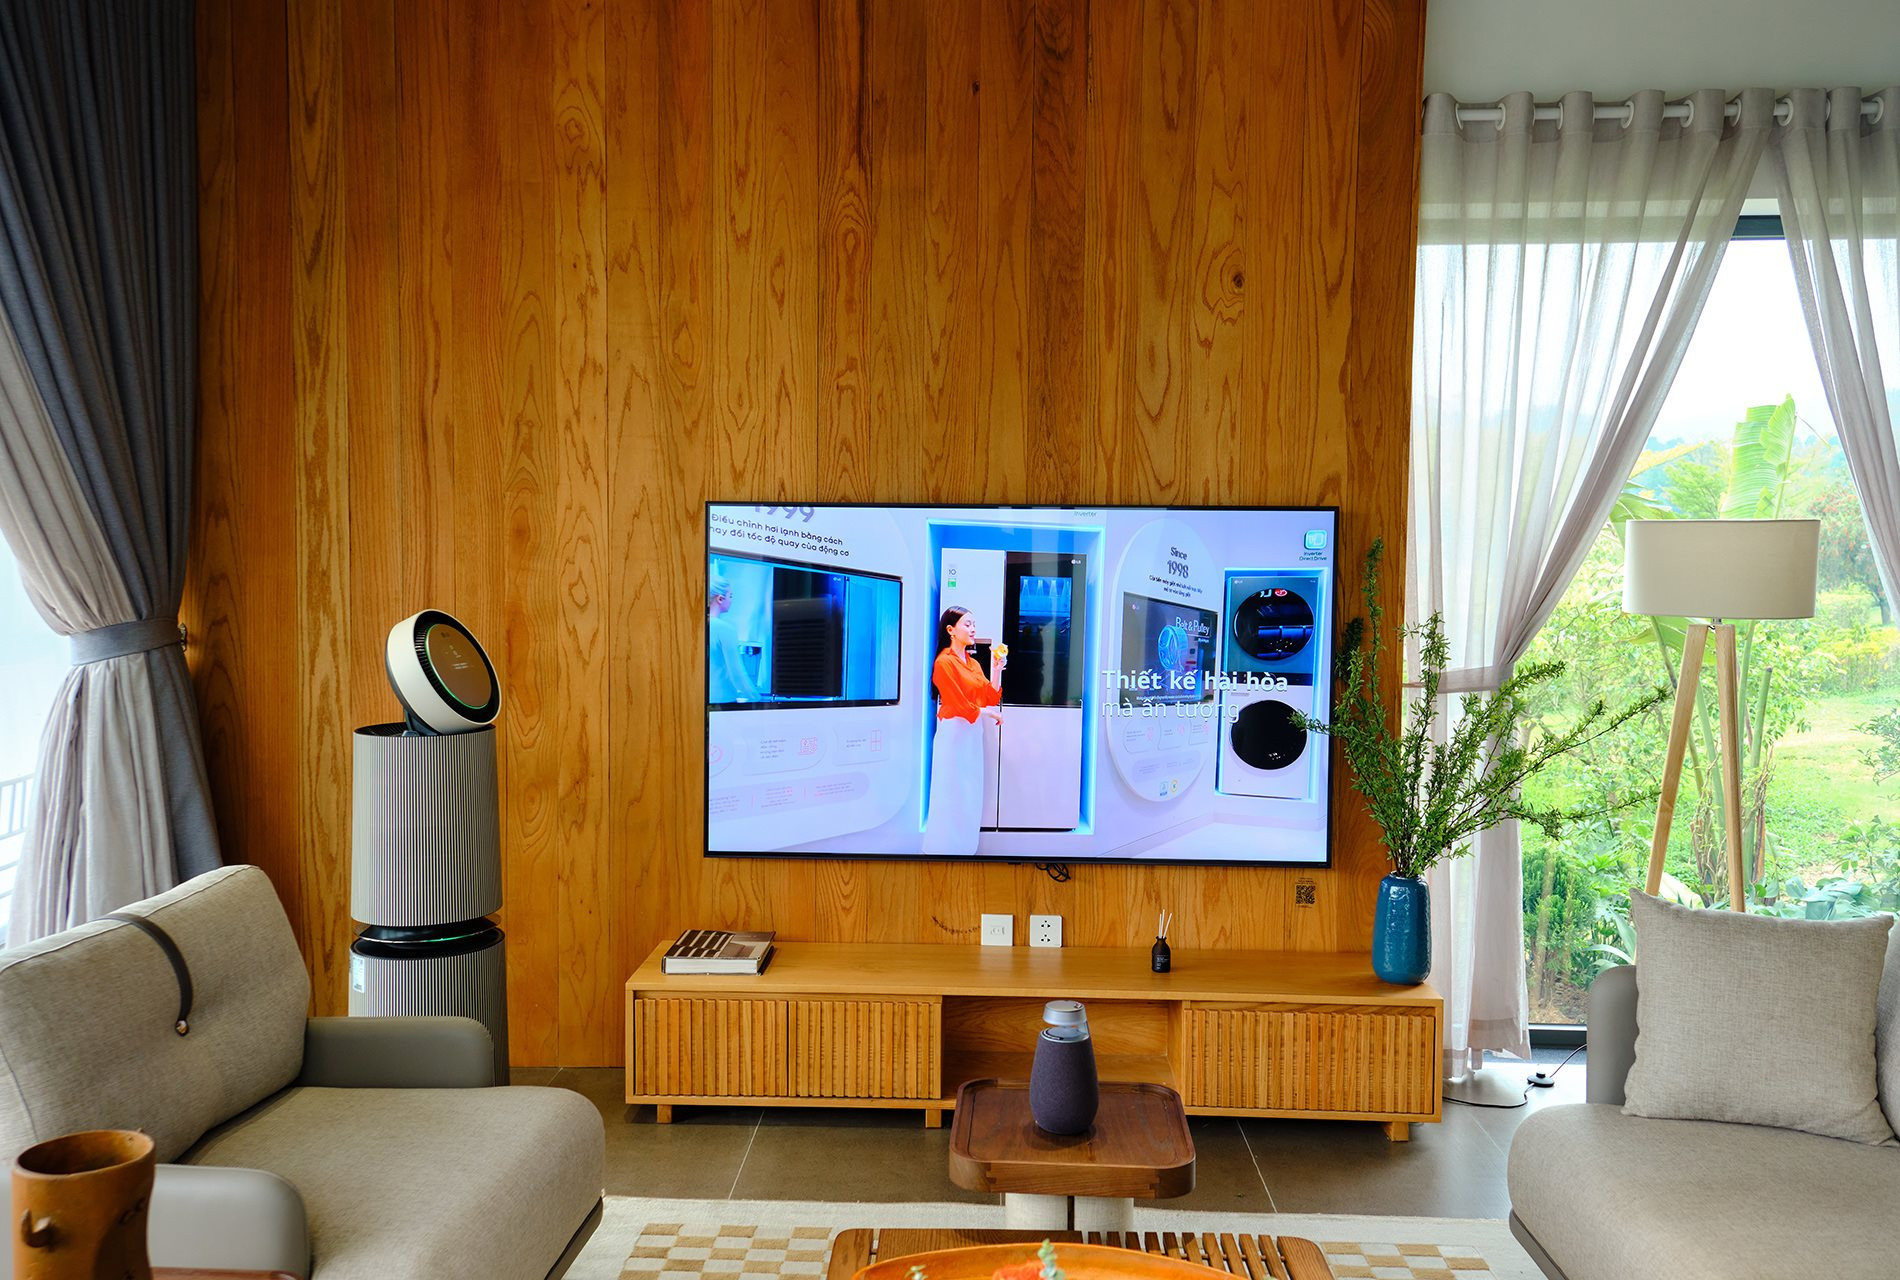 LG đưa bộ sưu tập Objet House ra miền Bắc: Đẹp, thông minh, chuẩn smarthome cho người có tiền- Ảnh 1.